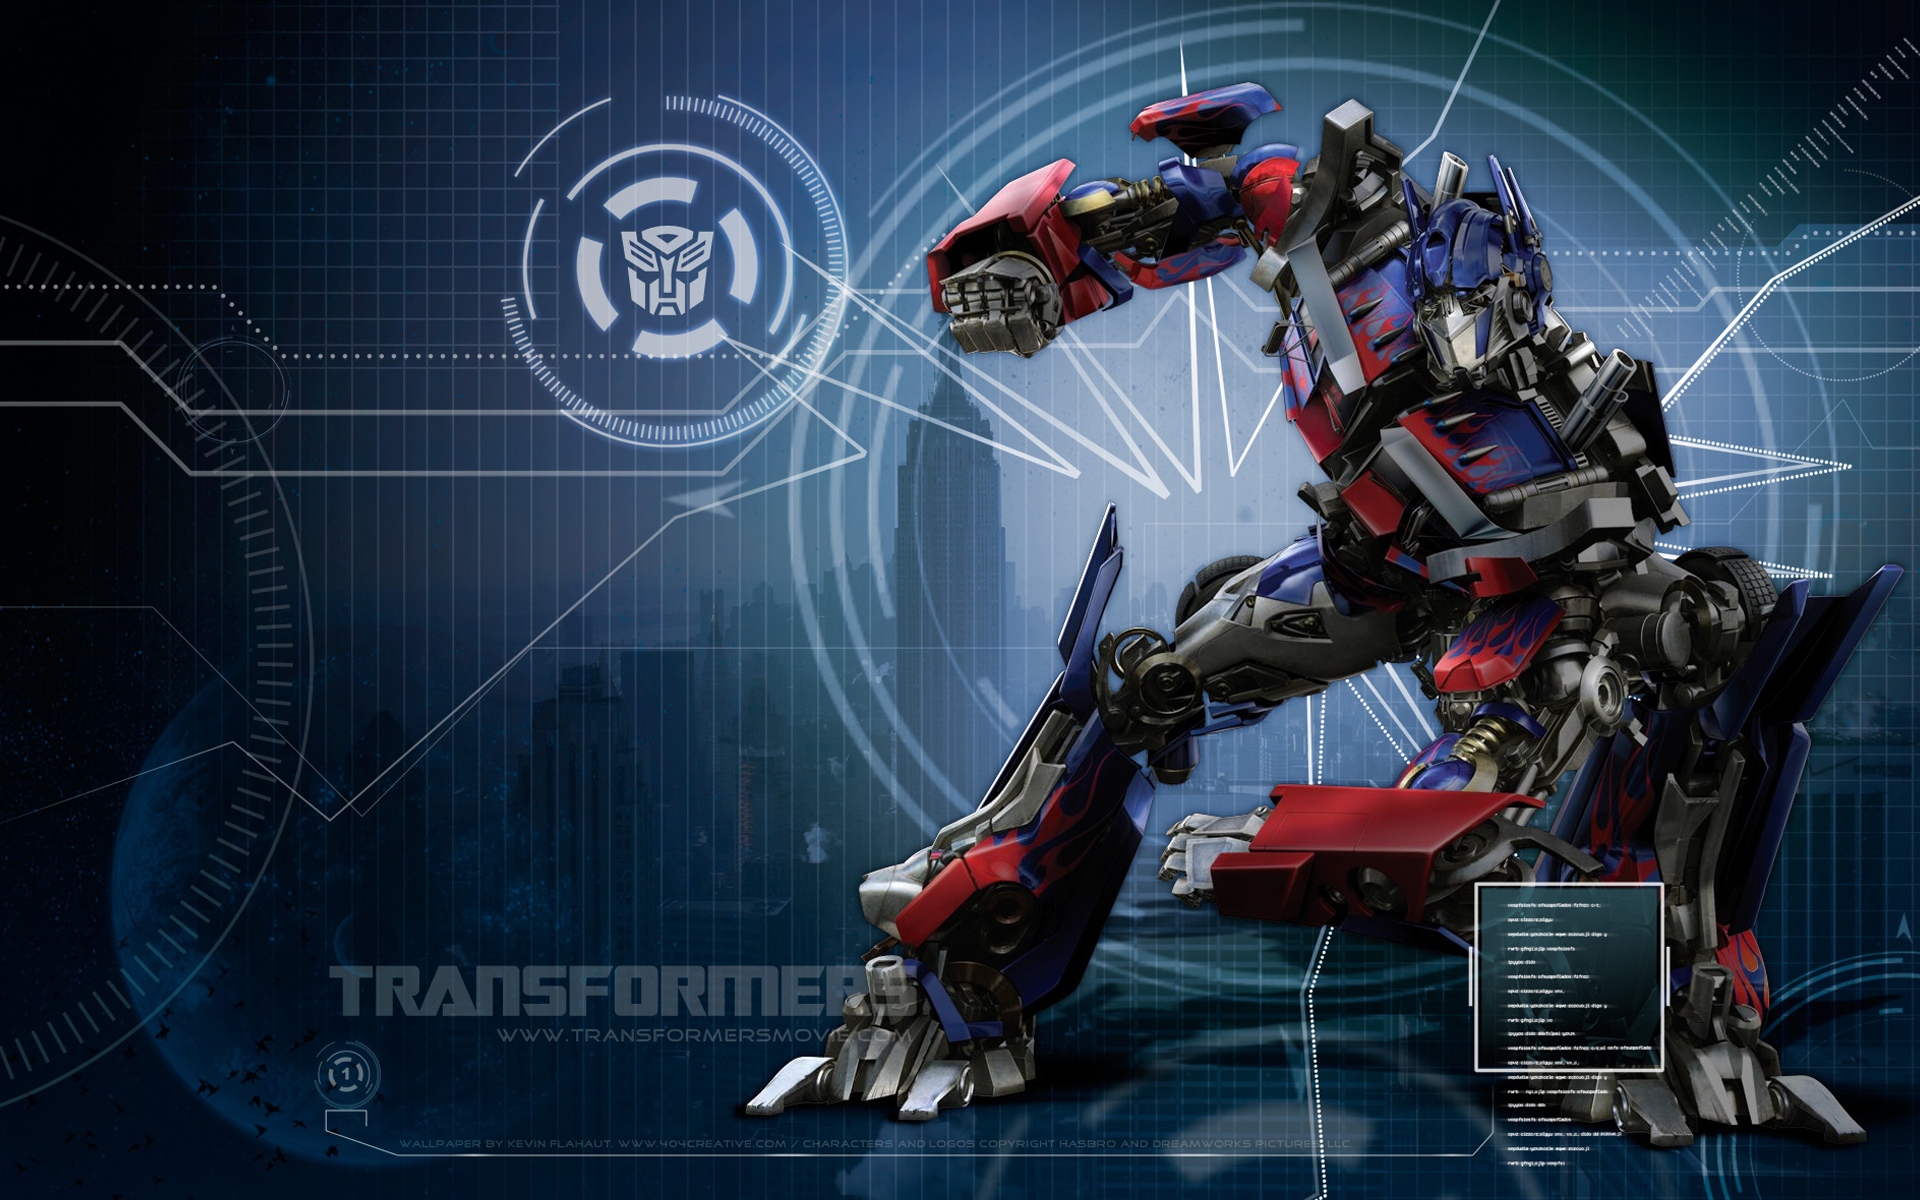 Transformers HD Desktop Wallpaper For Widescreen Fullscreen High